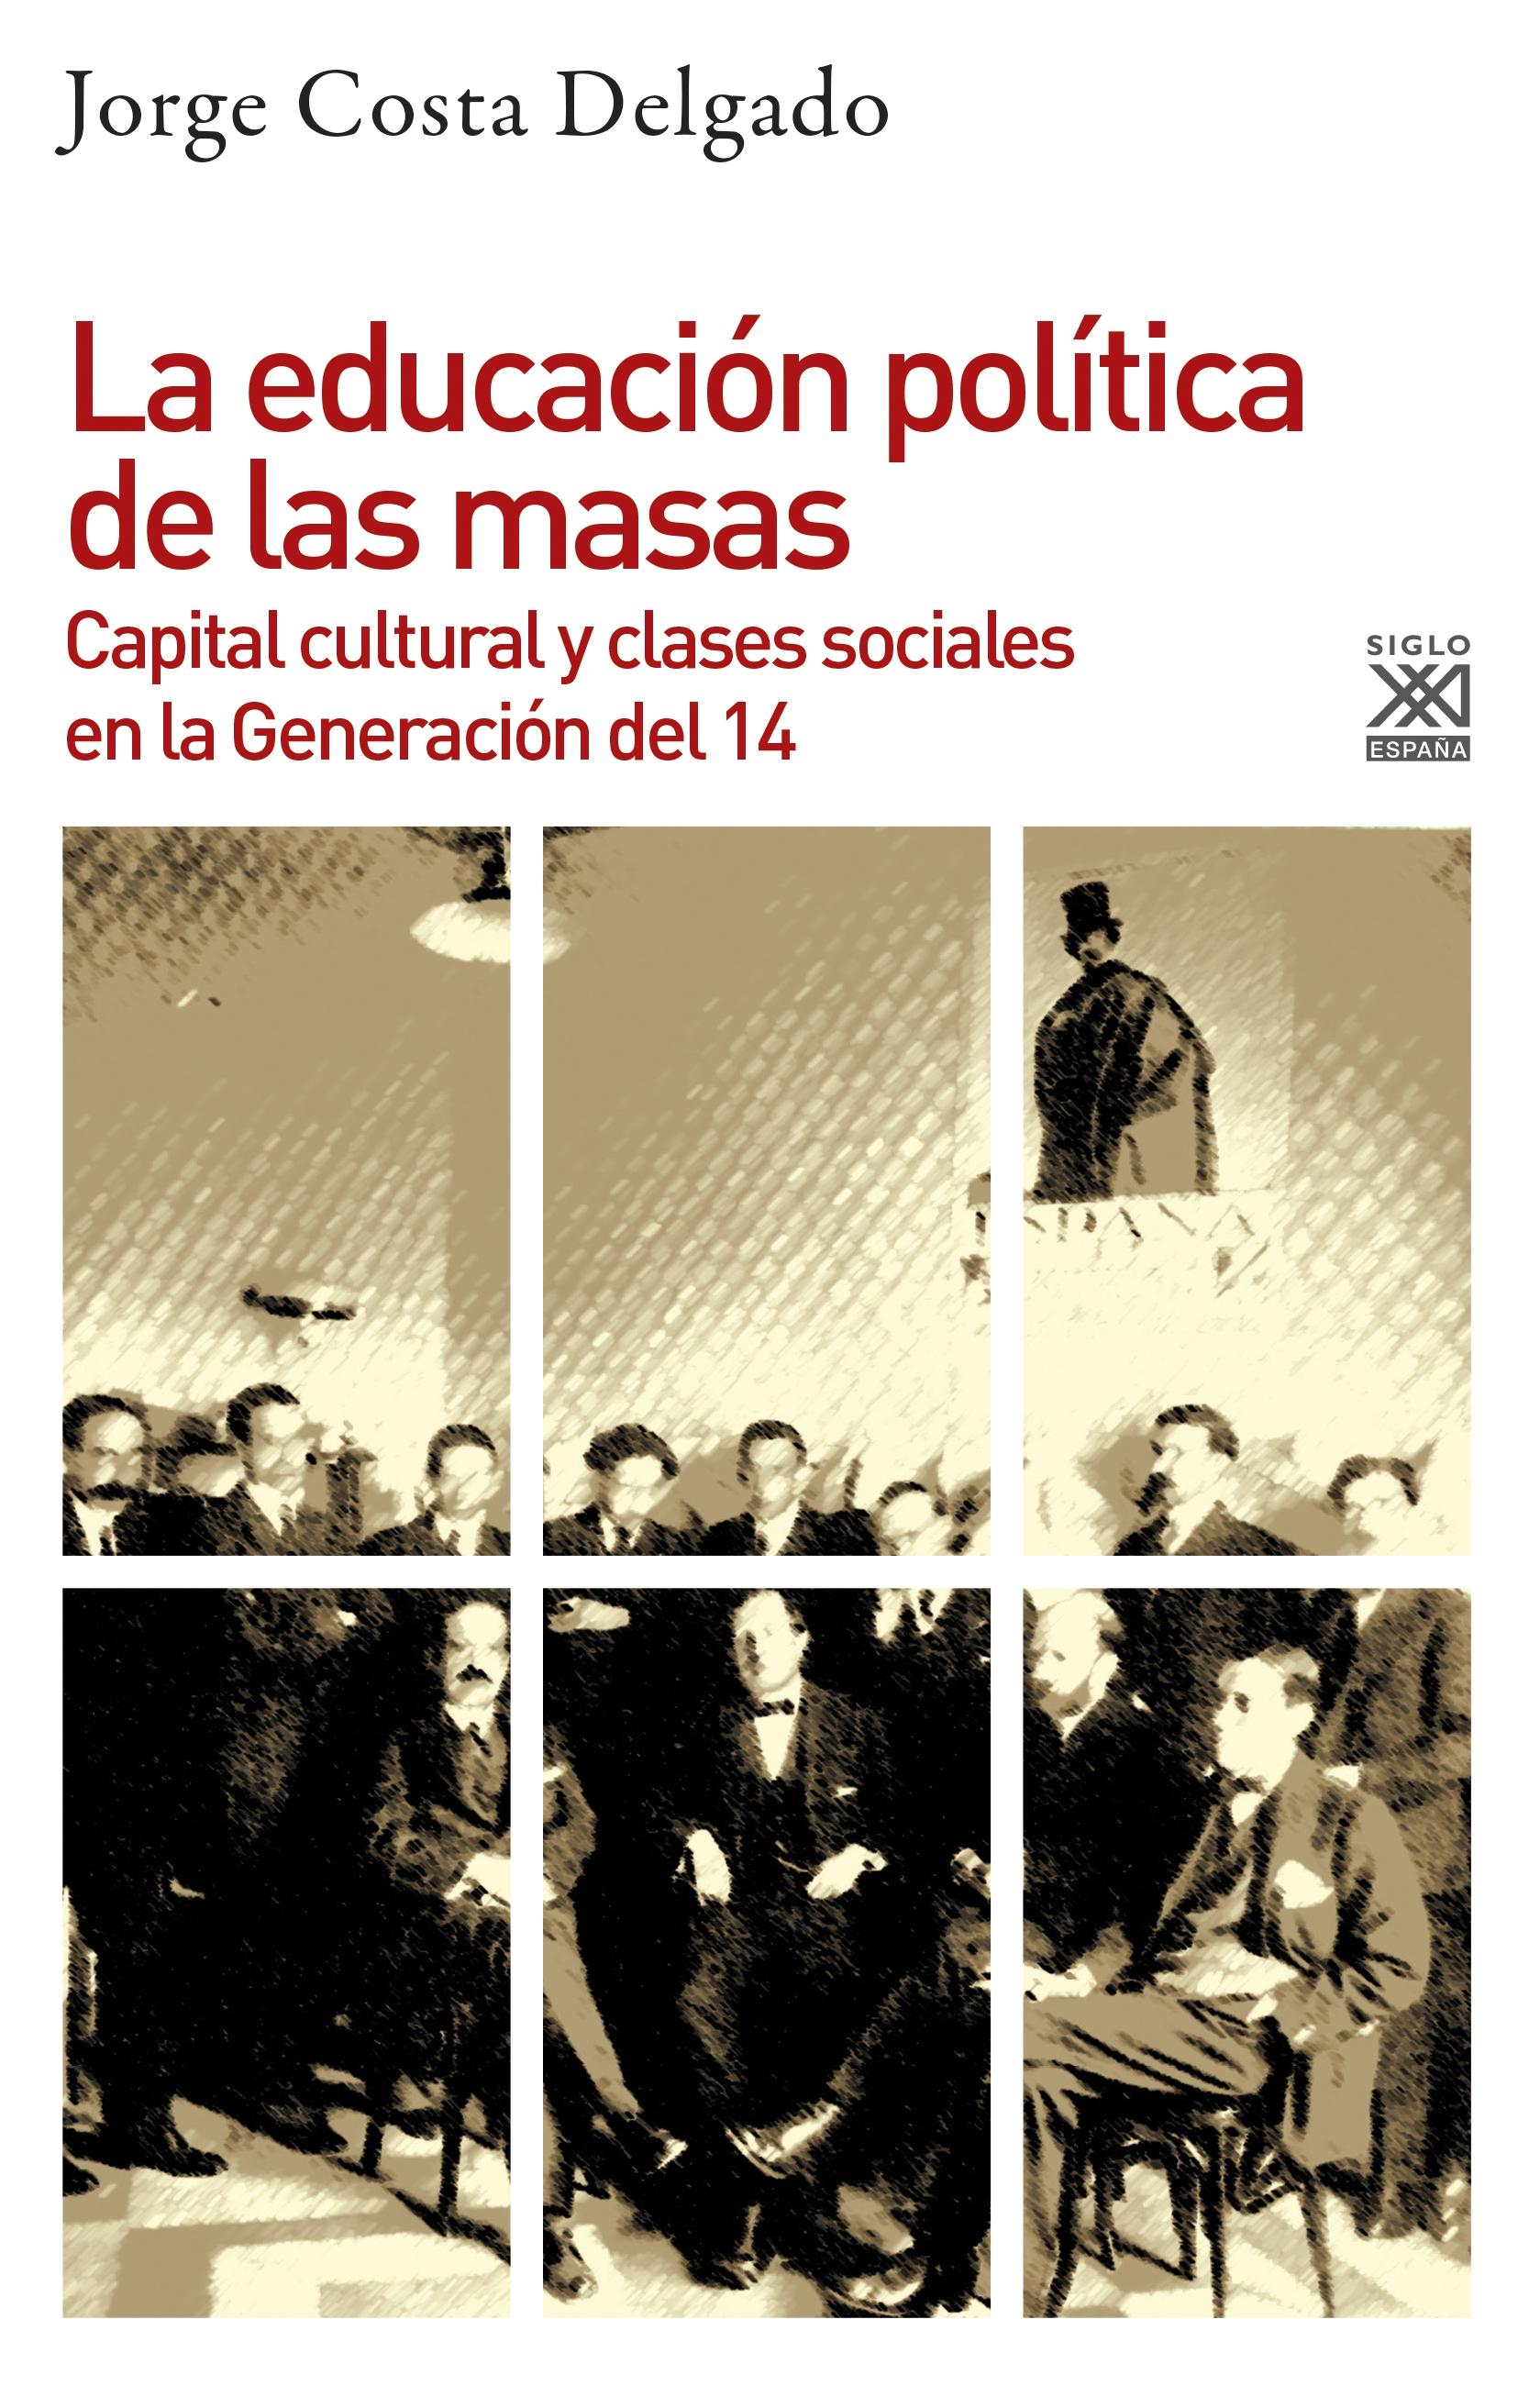 La educación política de las masas "Capital cultural y clases sociales en la Generación del 14". 